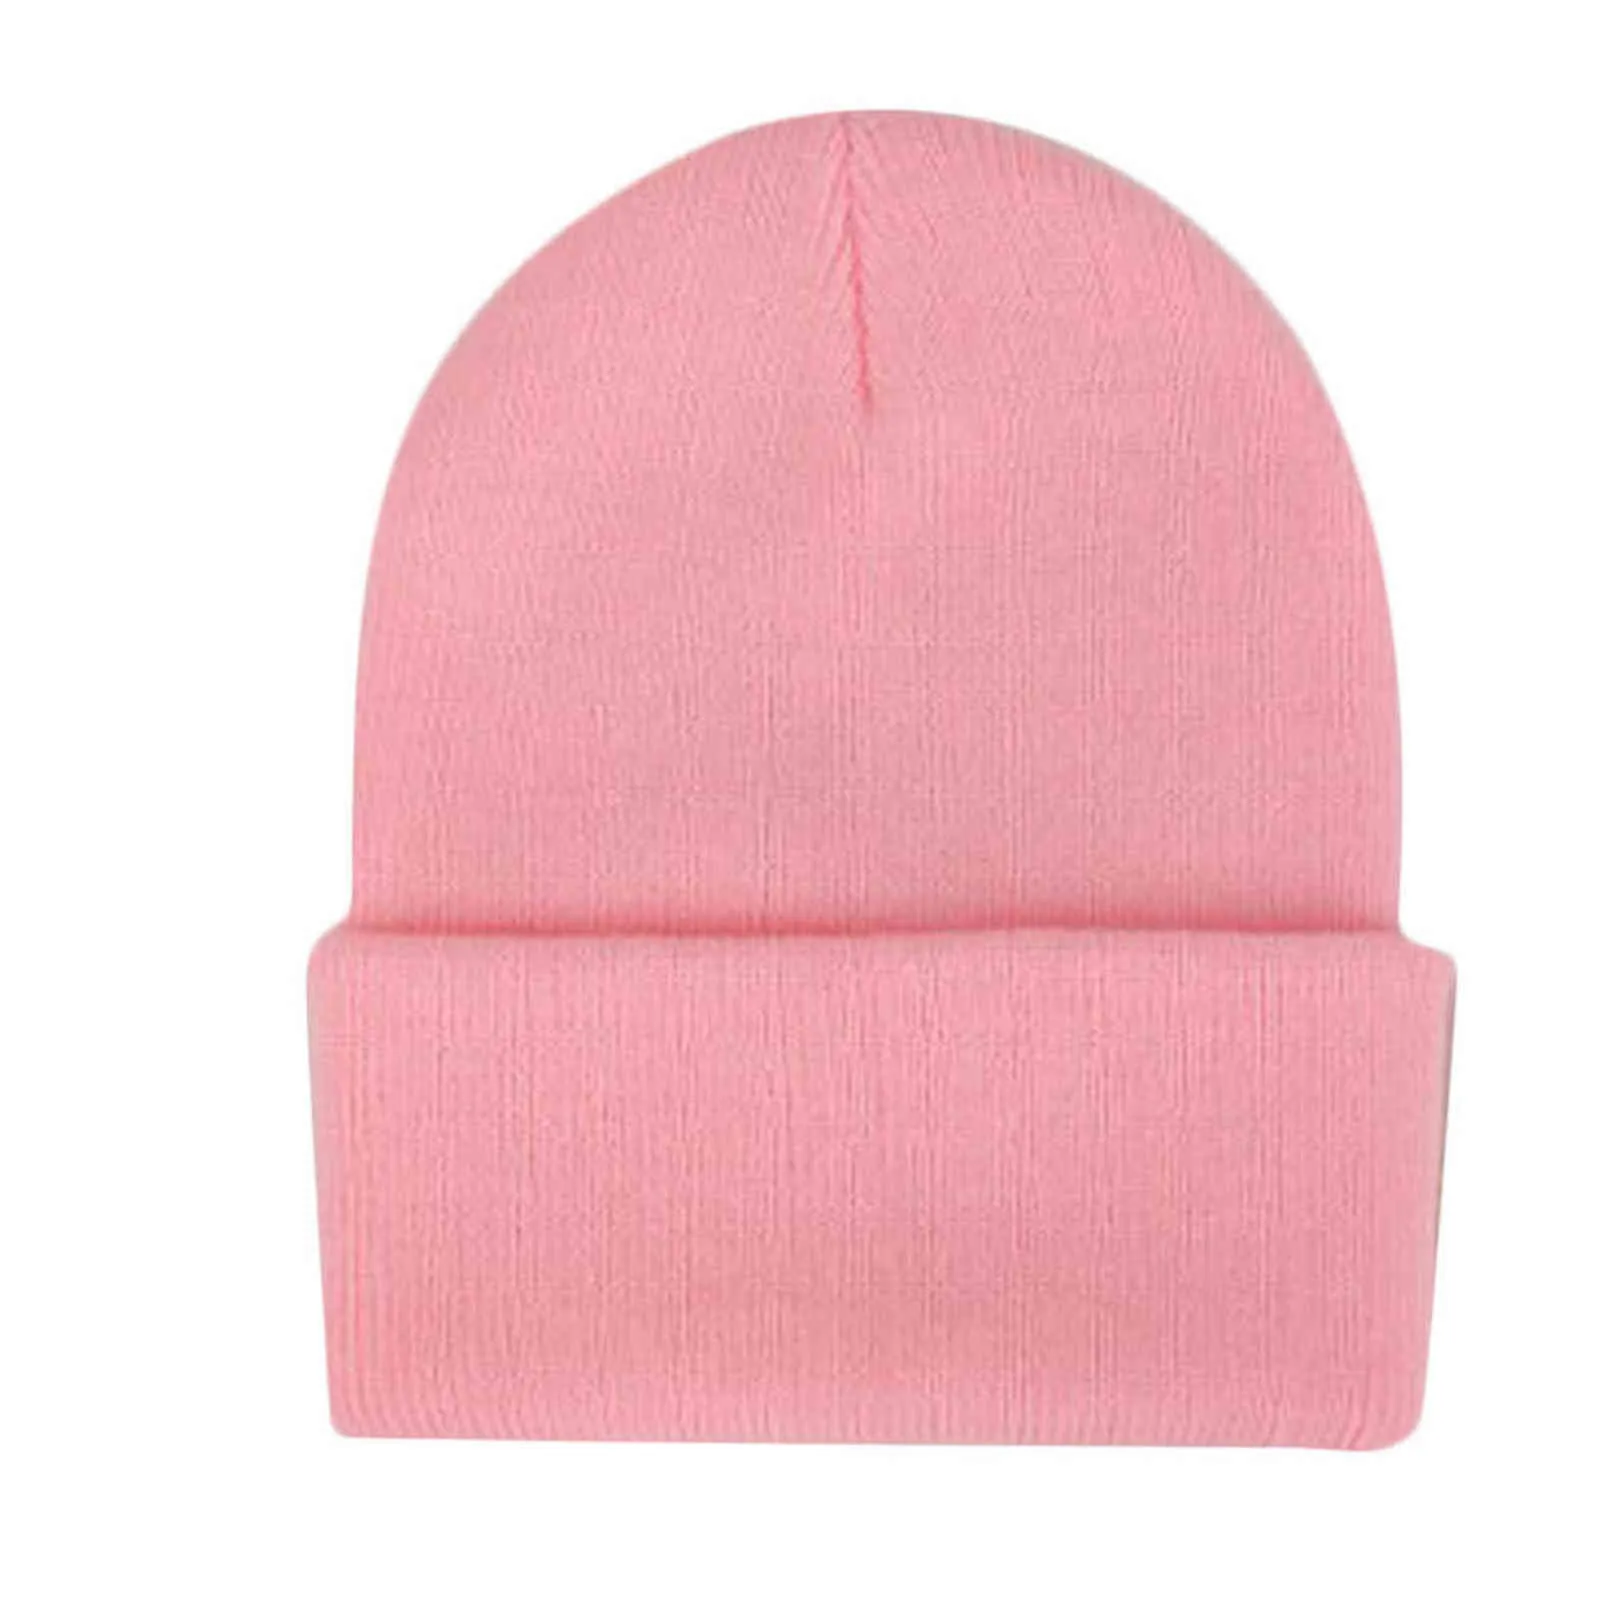 2018秋冬帽子韓国のカジュアルな男性女性ニットキャップグレーブルーブラックホワイトレッド弾性暖かい帽子ドロップショップY21111